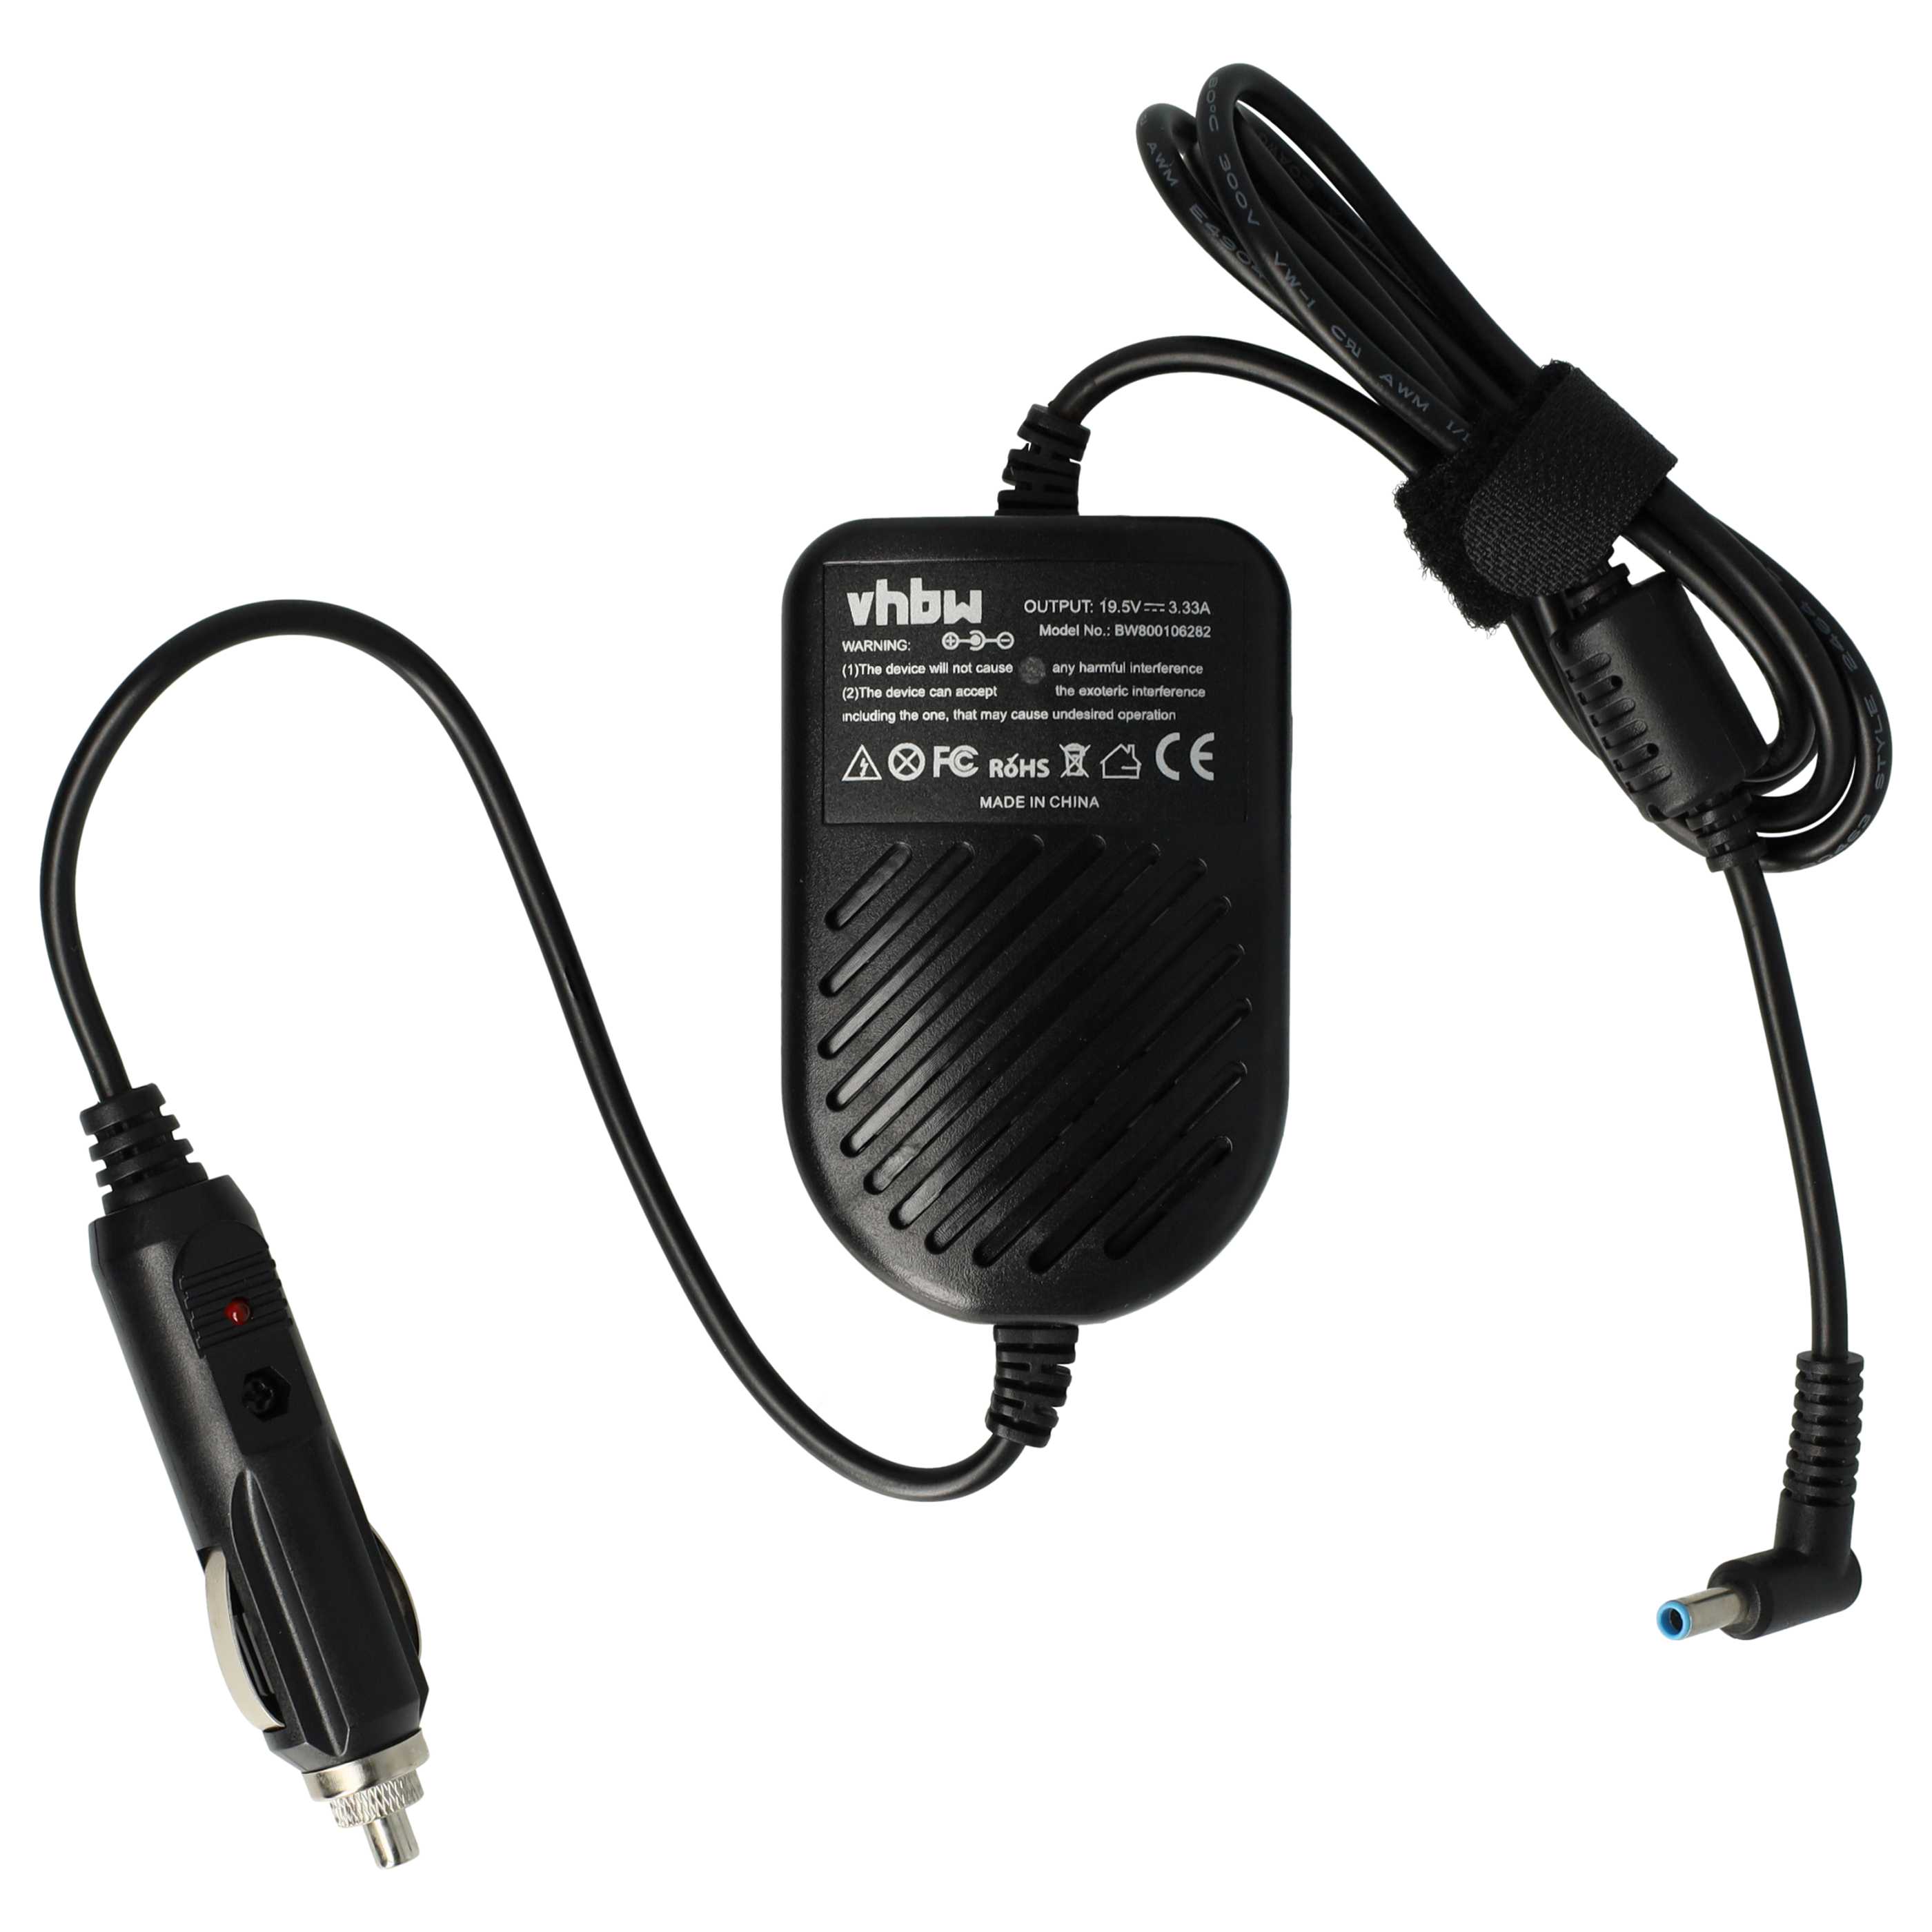 Chargeur auto remplace HP PP009C pour ordinateur portable - 3.34 A